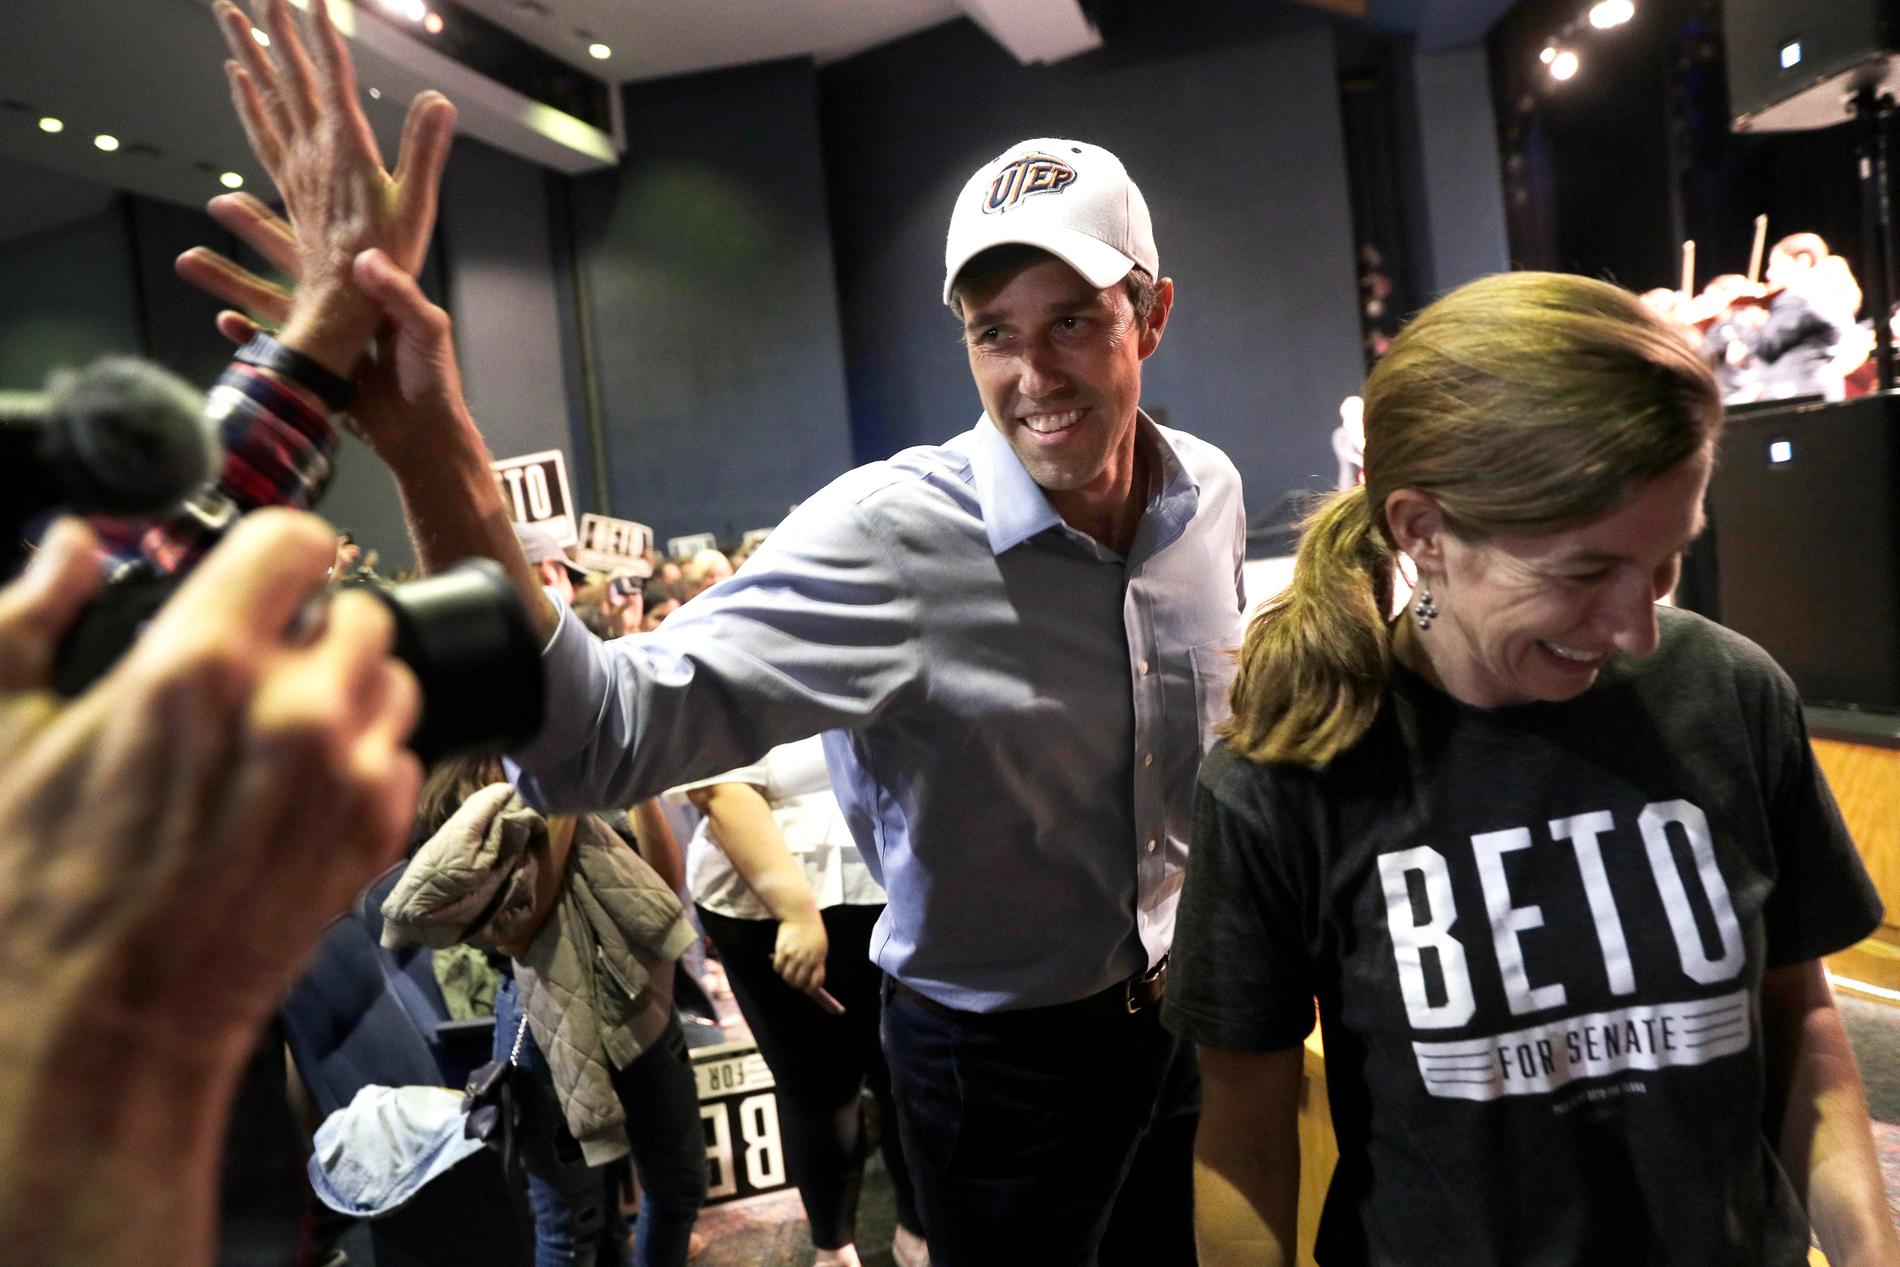 Texasdemokraten och tidigare representanthusledamoten Beto O'Rourke förlorade höstens senatorsval mot Texasrepublikanen Ted Cruz men ses som en stigande stjärna inom partiet.